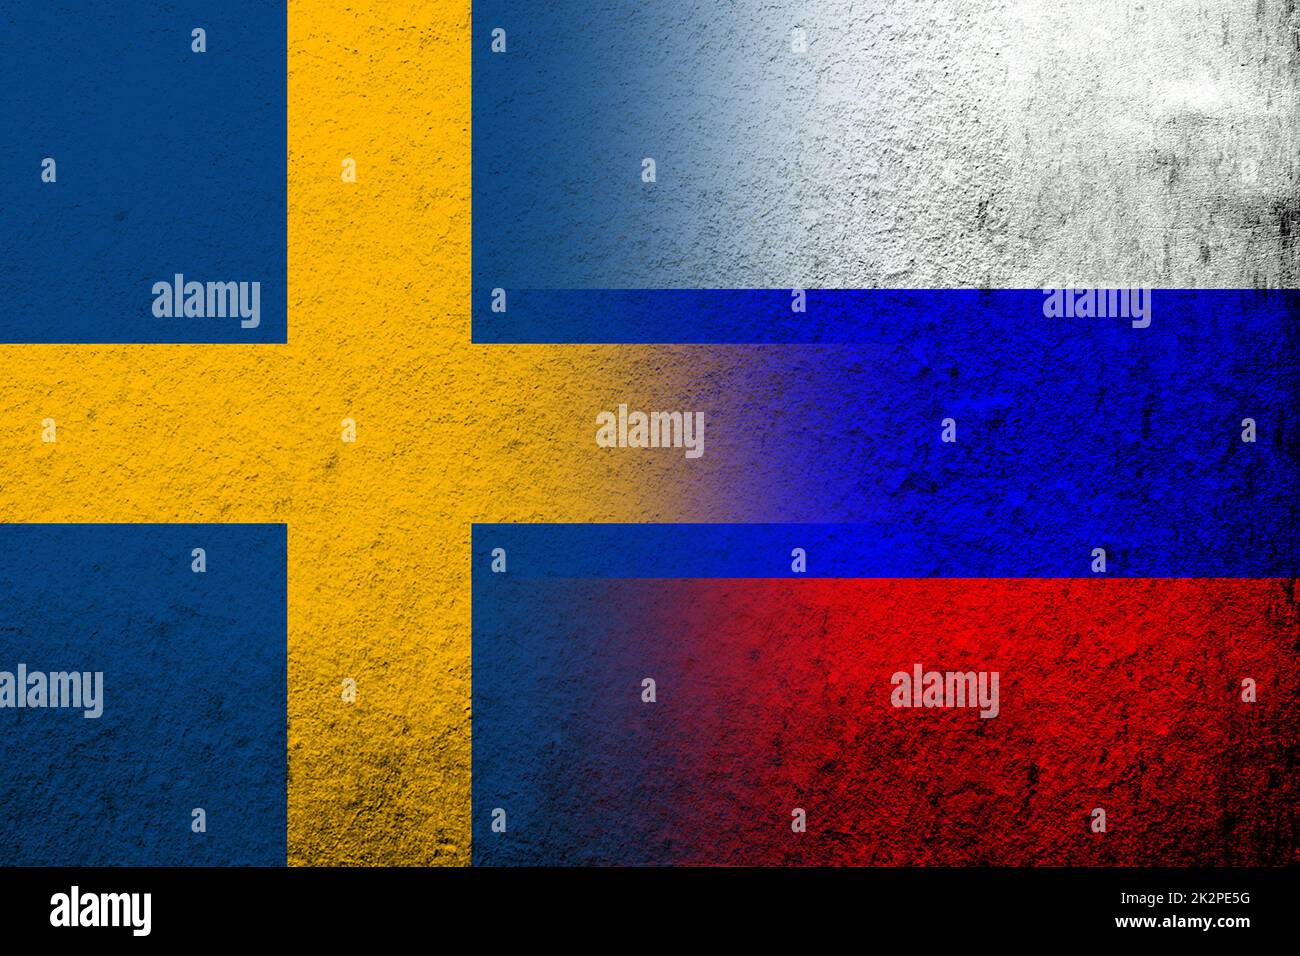 Drapeau national de la Fédération de Russie avec drapeau national du Royaume de Suède. Grunge l'arrière-plan Banque D'Images